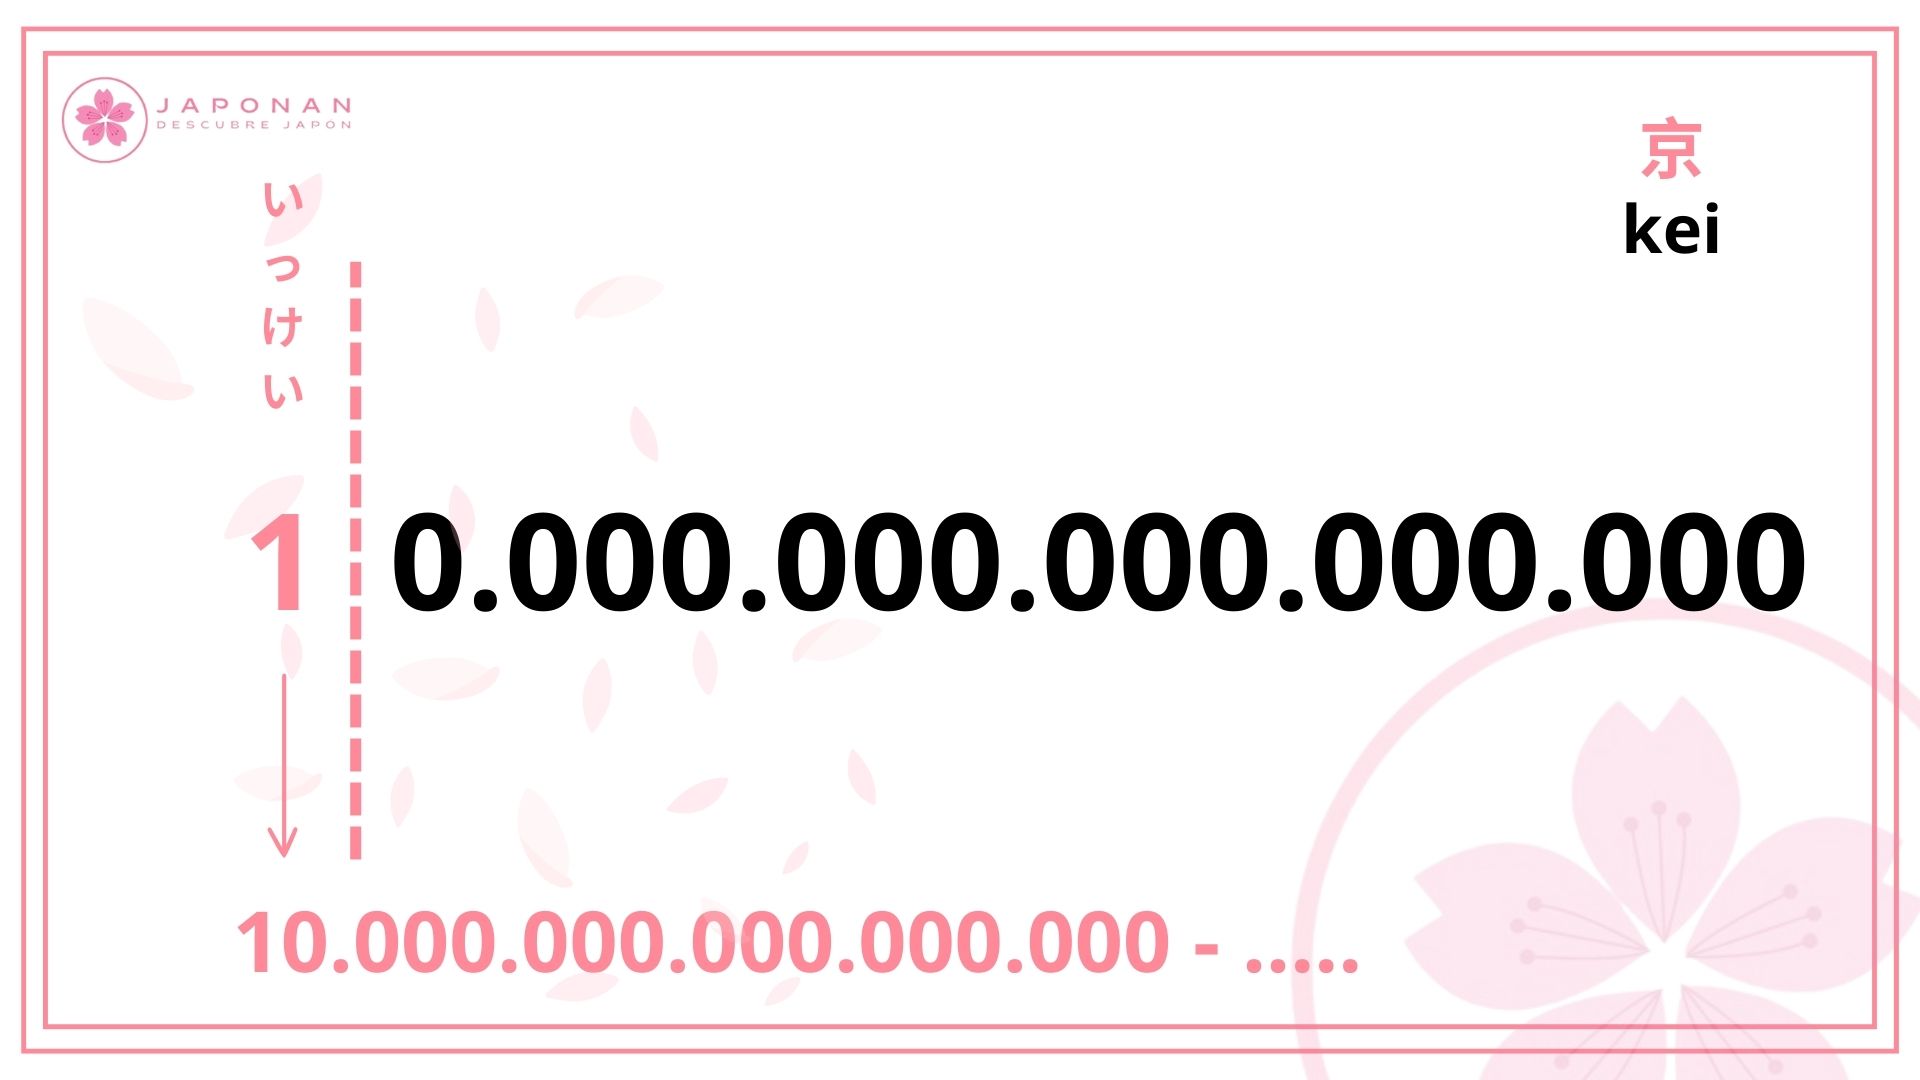 kei,10.000.000.000.000.000, números grandes en japonés